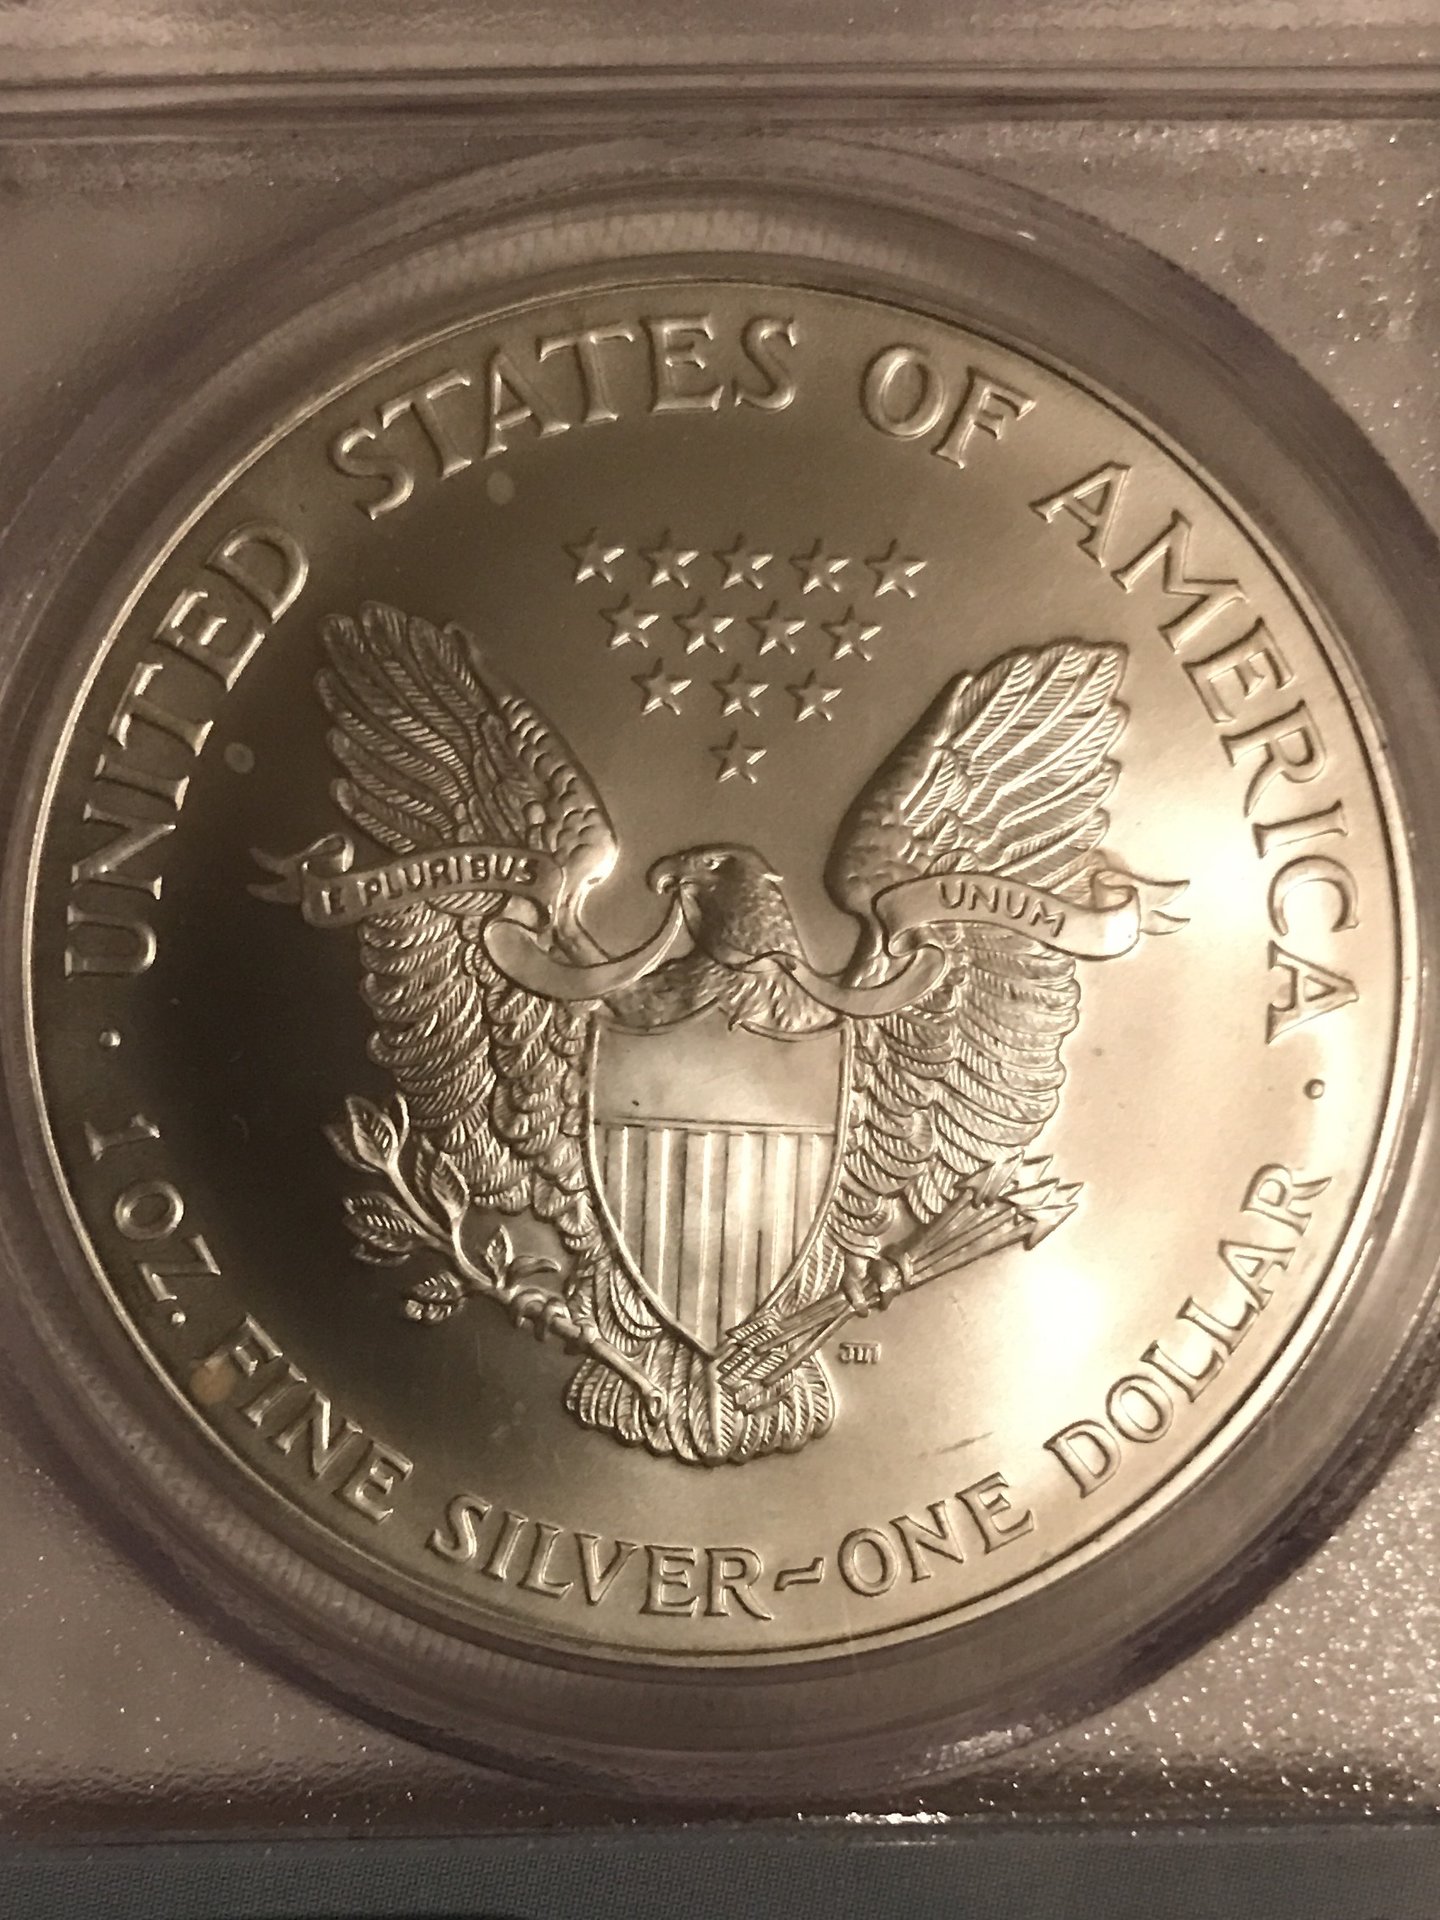 2001 World Trade Center Recovery Coin | Coin Talk